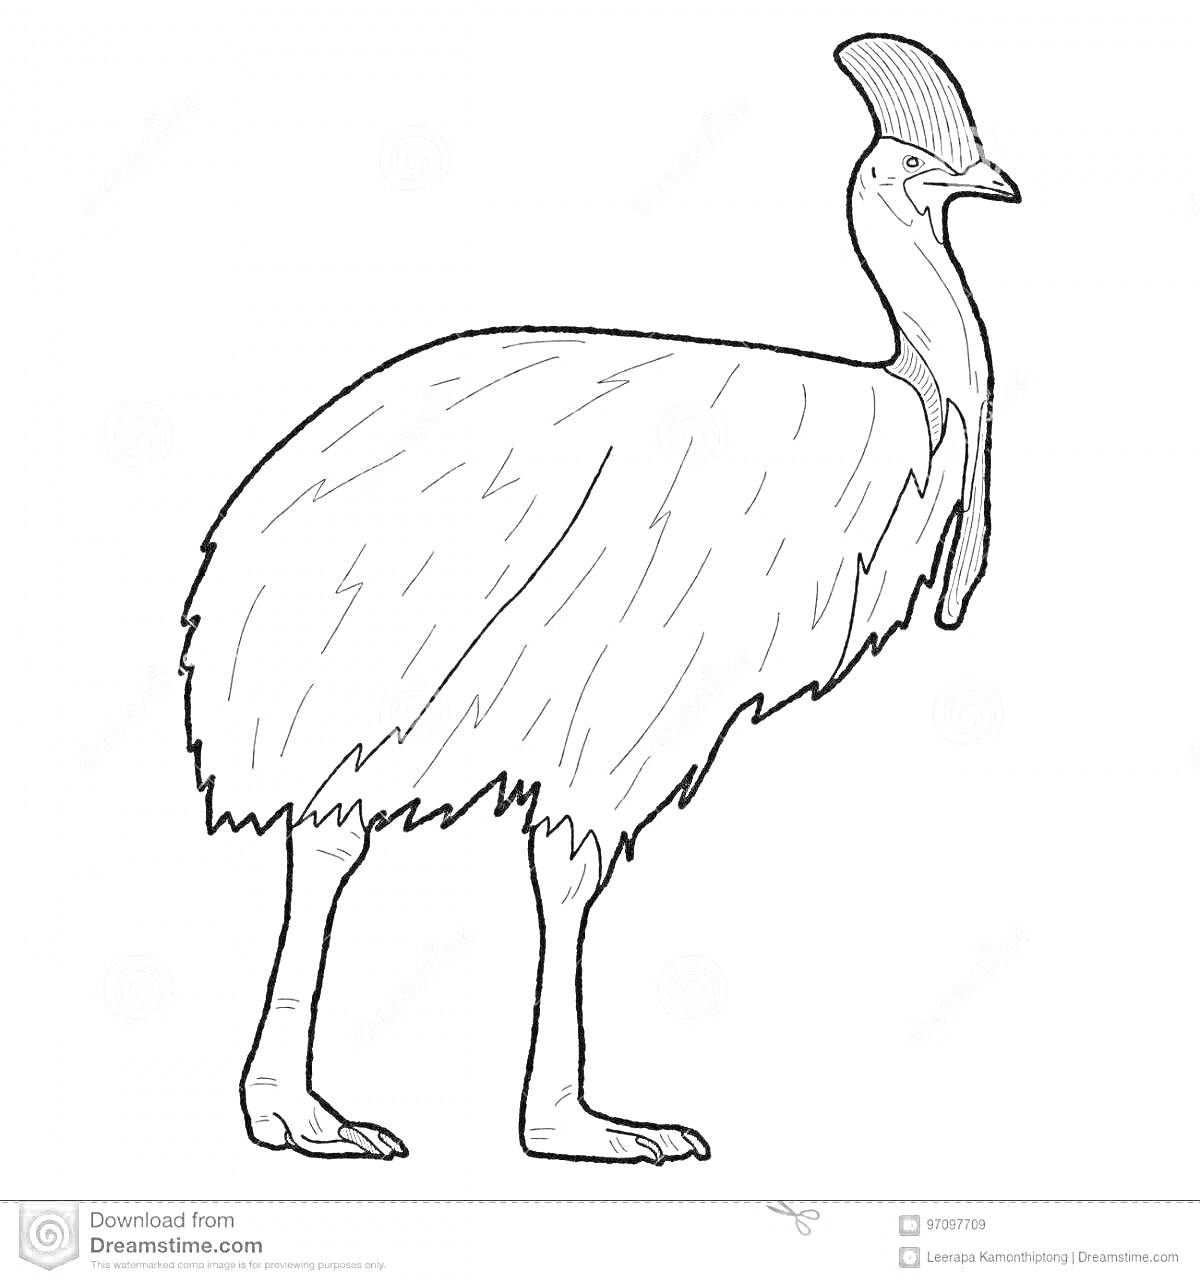 Раскраска Контурное изображение казуара, вид сбоку, животное стоит на ногах